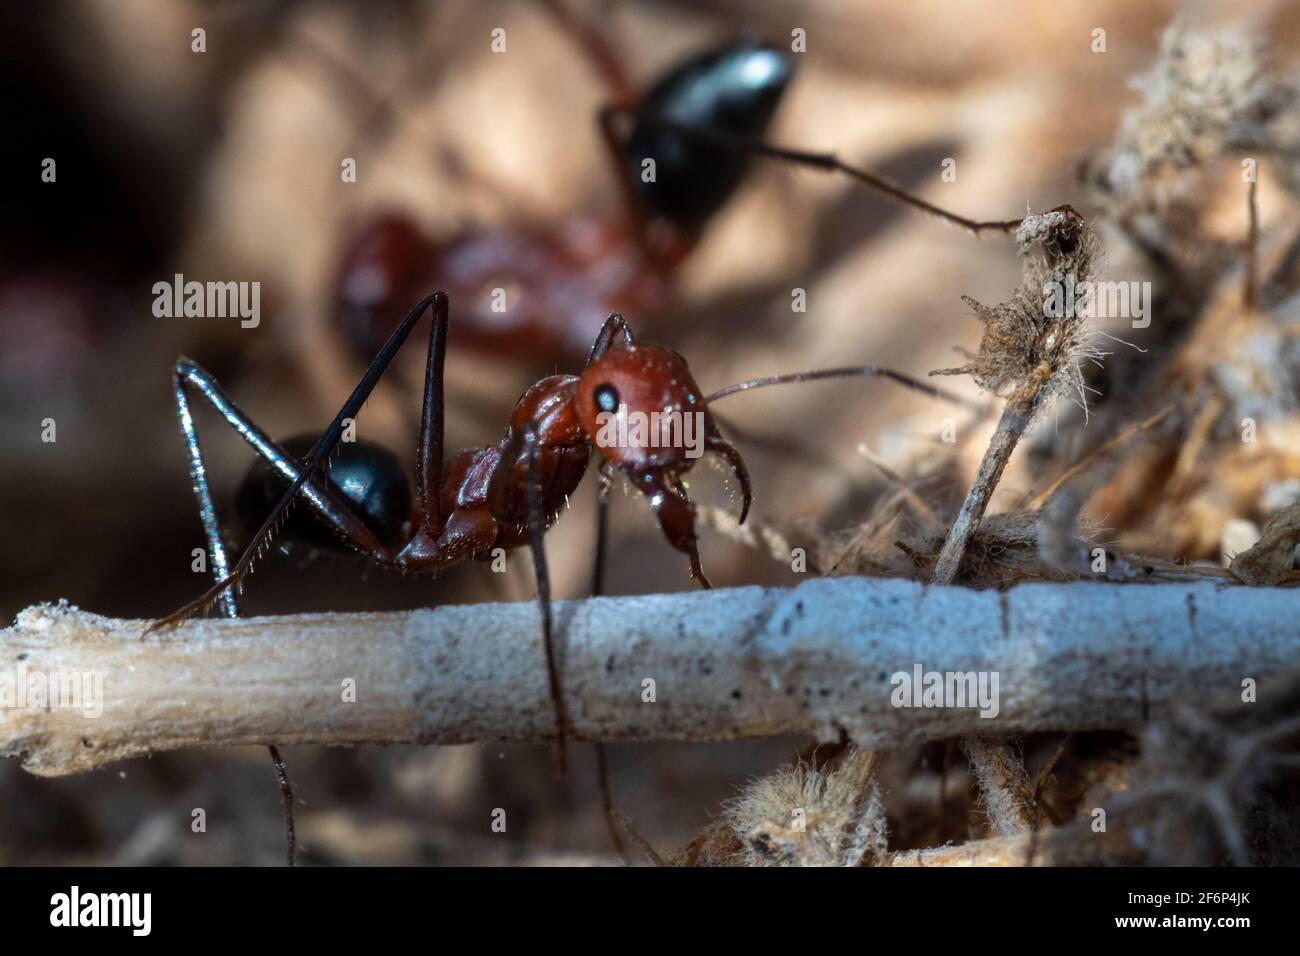 Sahara Desert Ameisen (Cataglyhis nodus) Makrofotografie fleißig arbeiten, Vereinigte Arabische Emirate. Teamarbeit, harte Arbeit und Einfallsreichtum Konzepte. Stockfoto